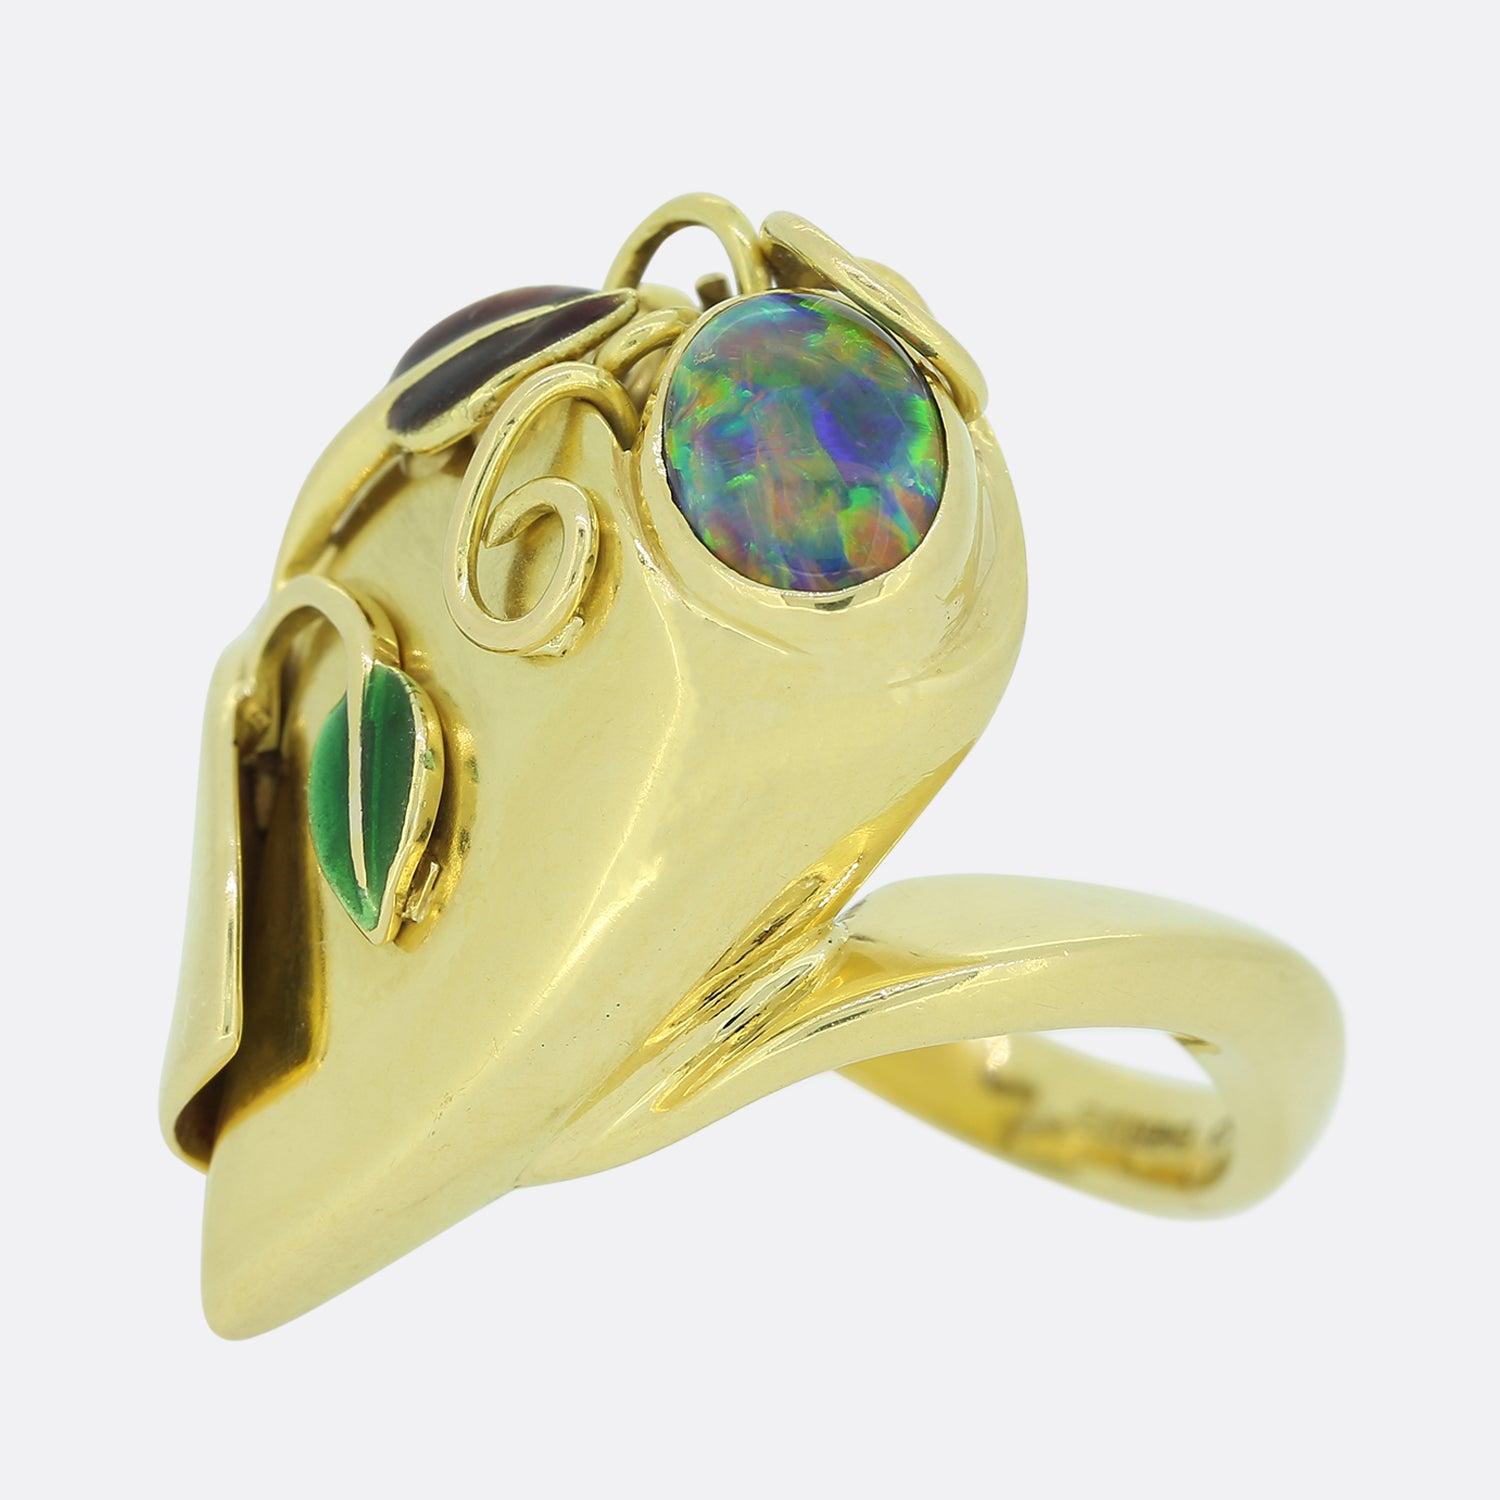 Dieser Vintage-Ring beherbergt einen ovalen schwarzen Opal, der von grüner und violetter Emaille in einem floralen Muster umgeben ist. Der Ring ist aus 18 Karat Gelbgold gefertigt. Der Opal hat ein wunderbares Farbspiel und ist ein sehr begehrter